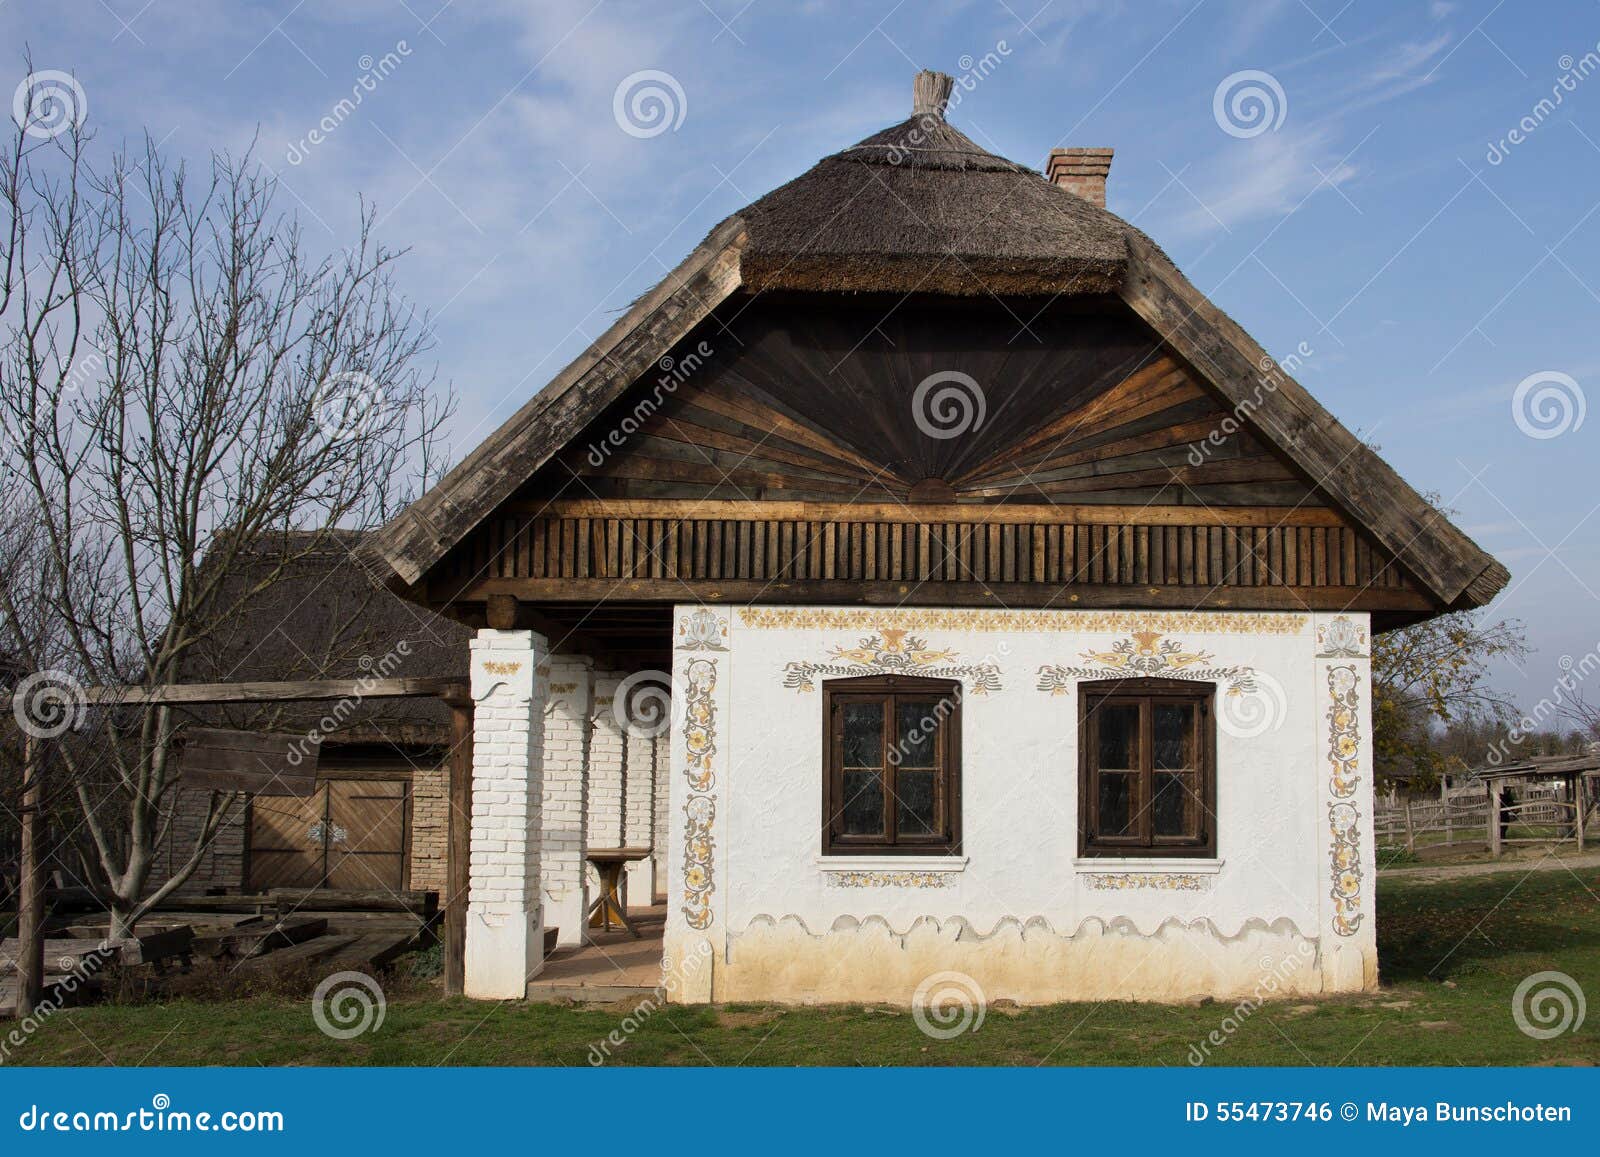 Венгерский дом дом во франции купить недорого